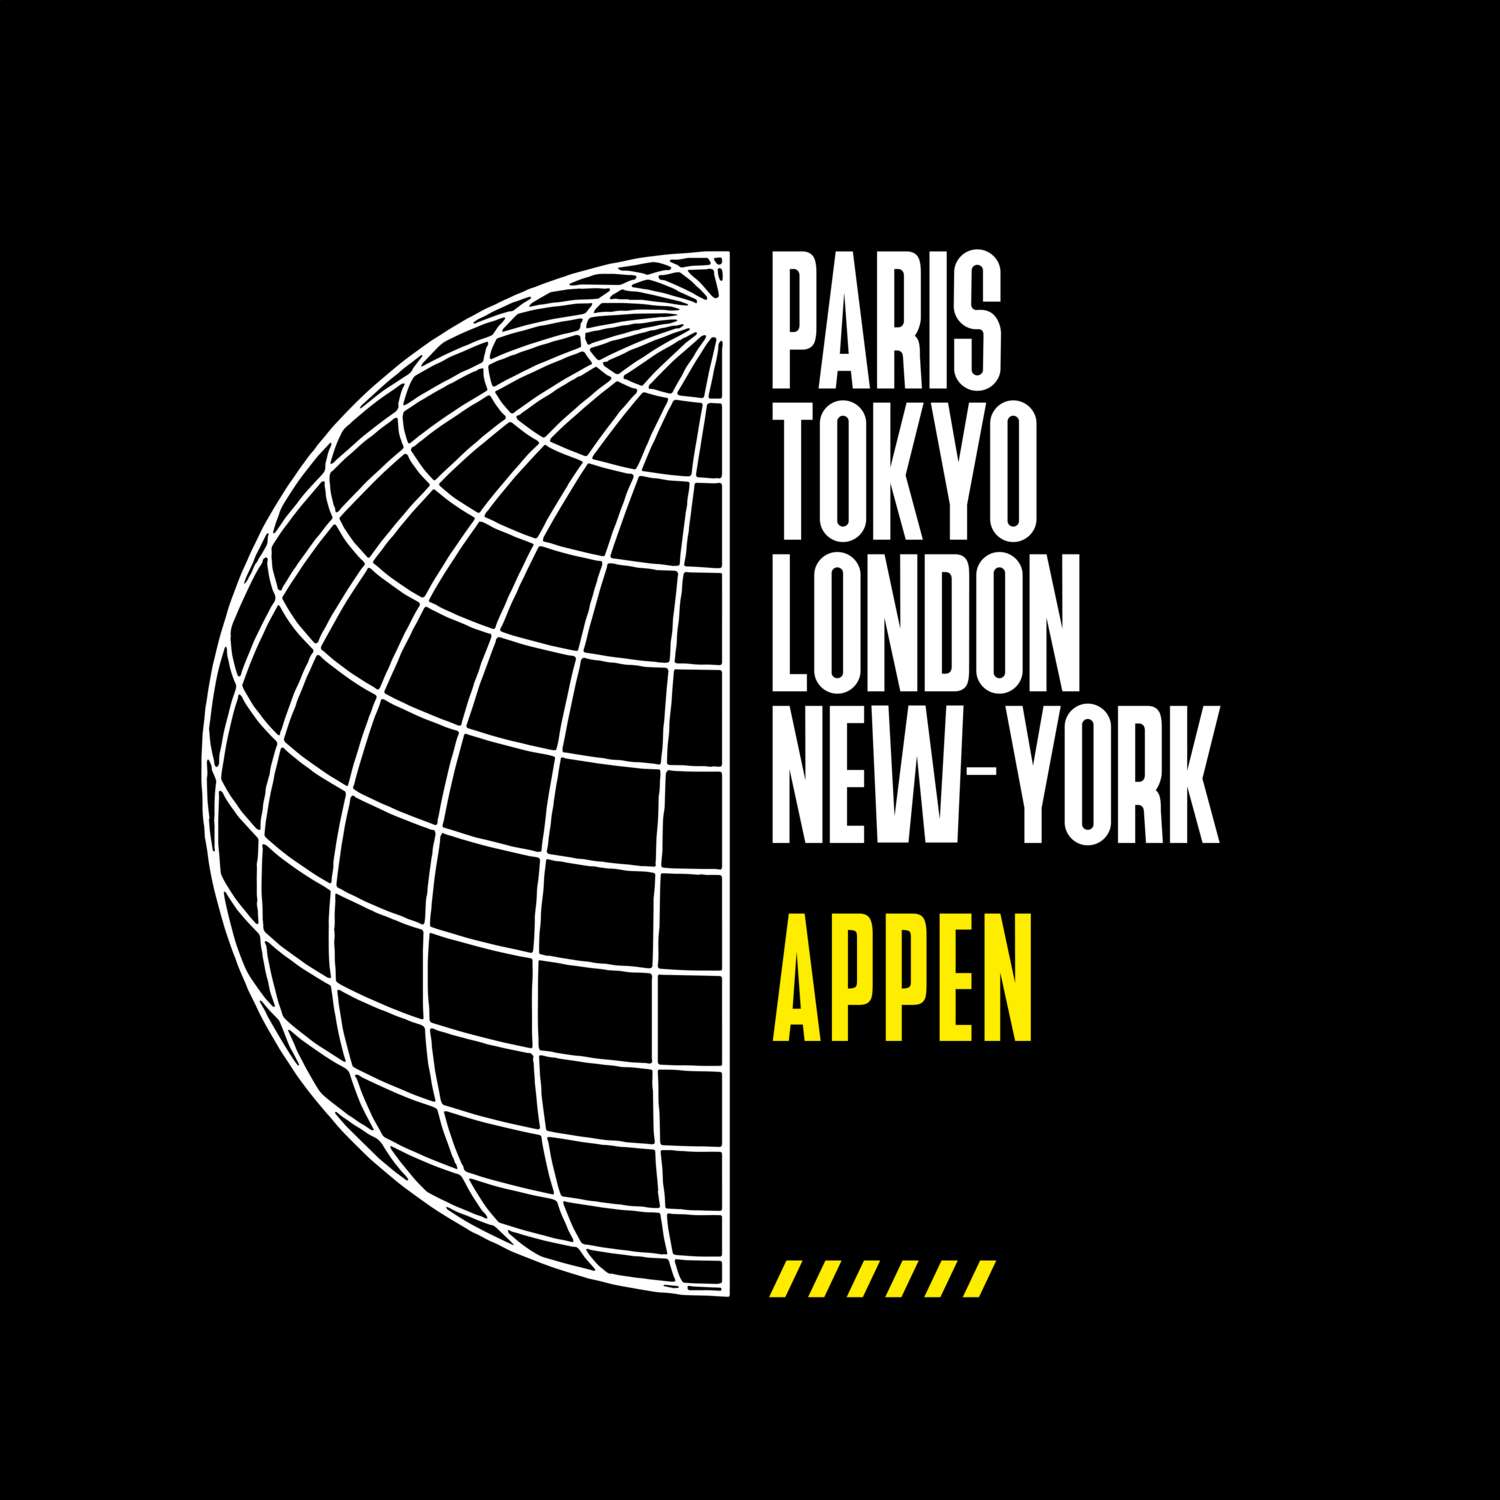 Appen T-Shirt »Paris Tokyo London«